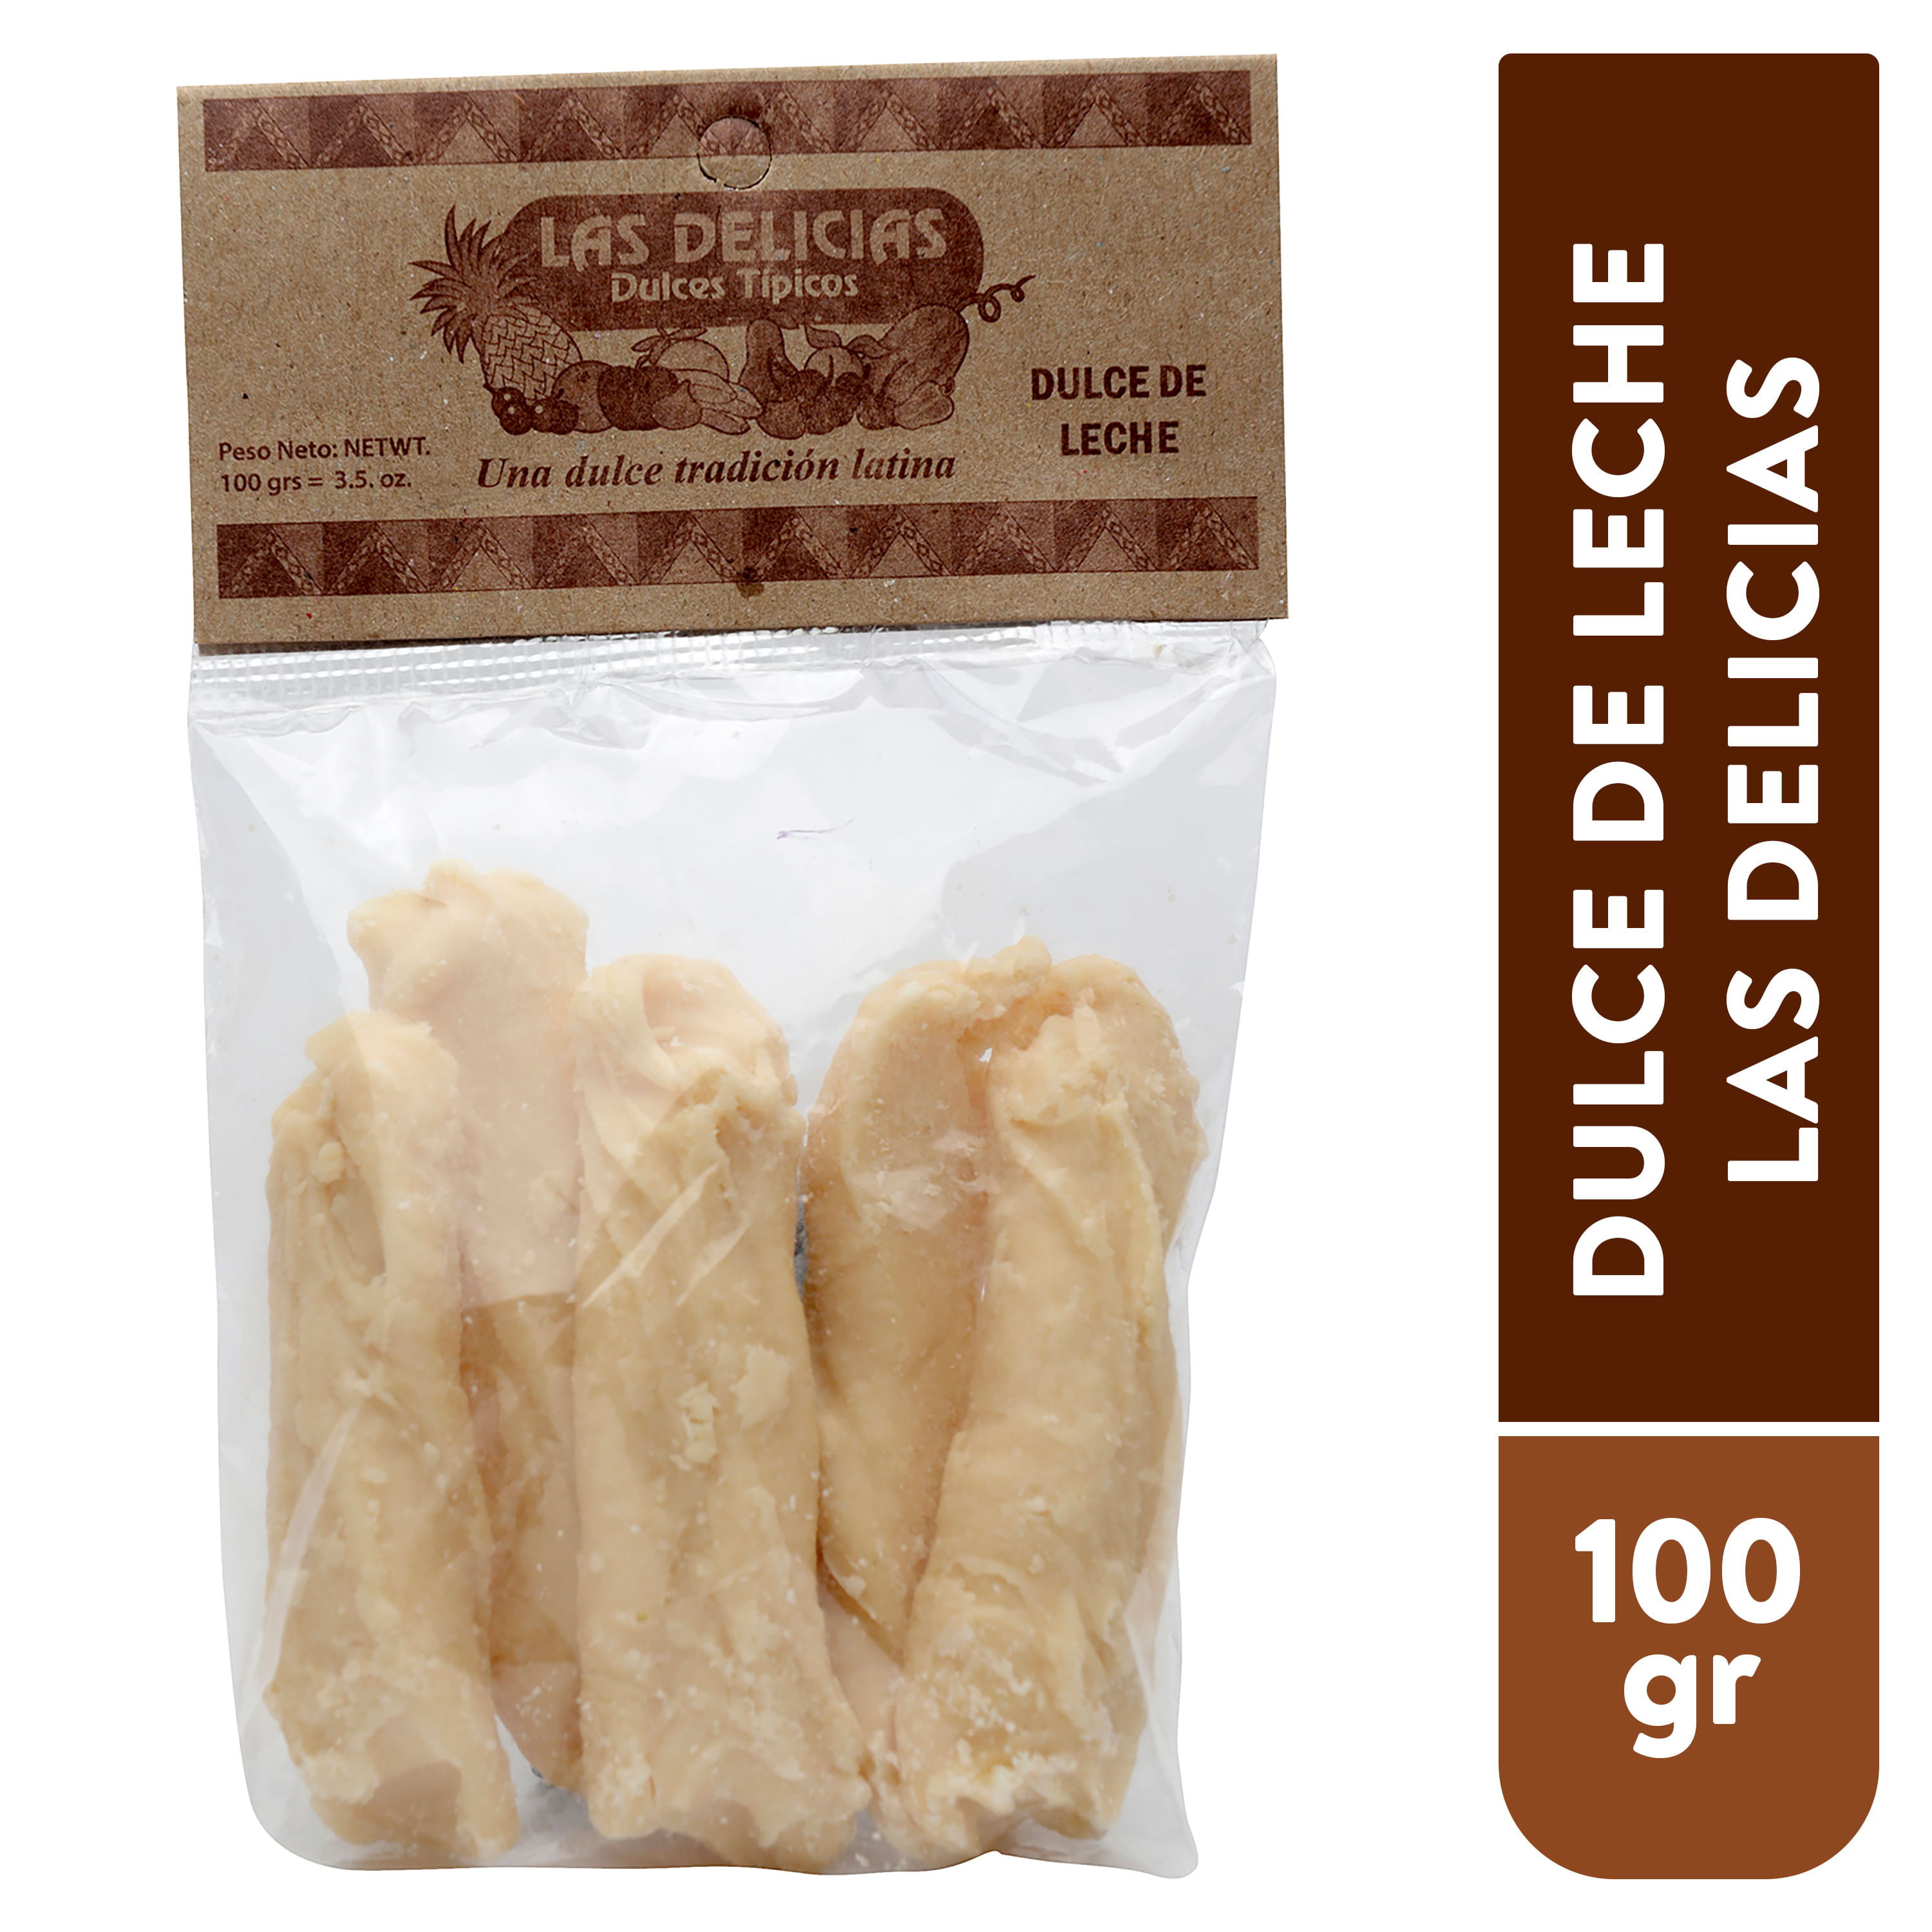 Canillita-Las-Delicias-Dulce-de-Leche-100gr-1-29717